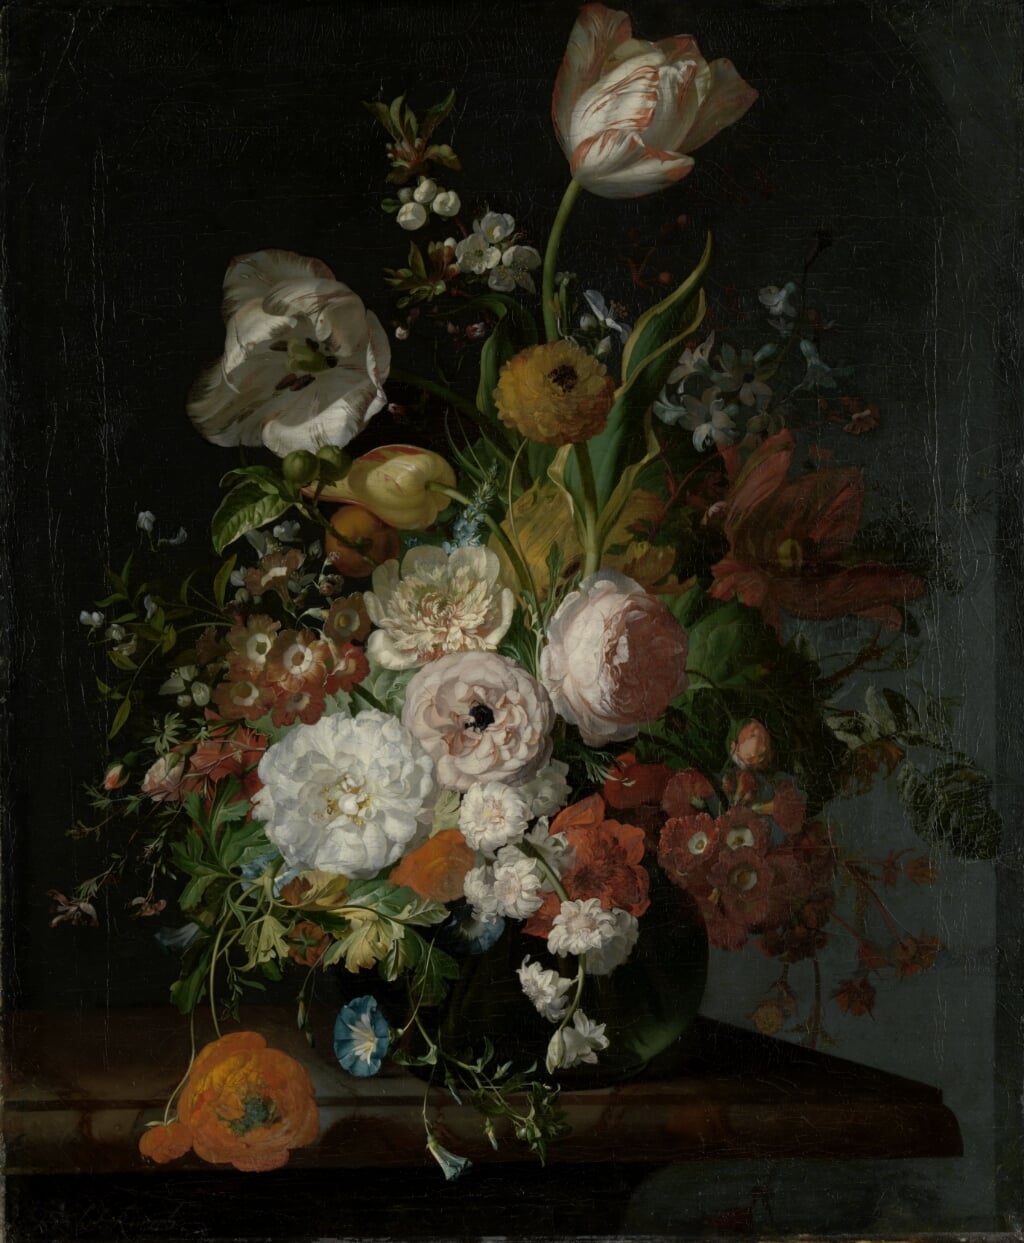 Rachel Ruysch, 'Stilleven met bloemen in een vaas', 1690-1720, Rijksmuseum